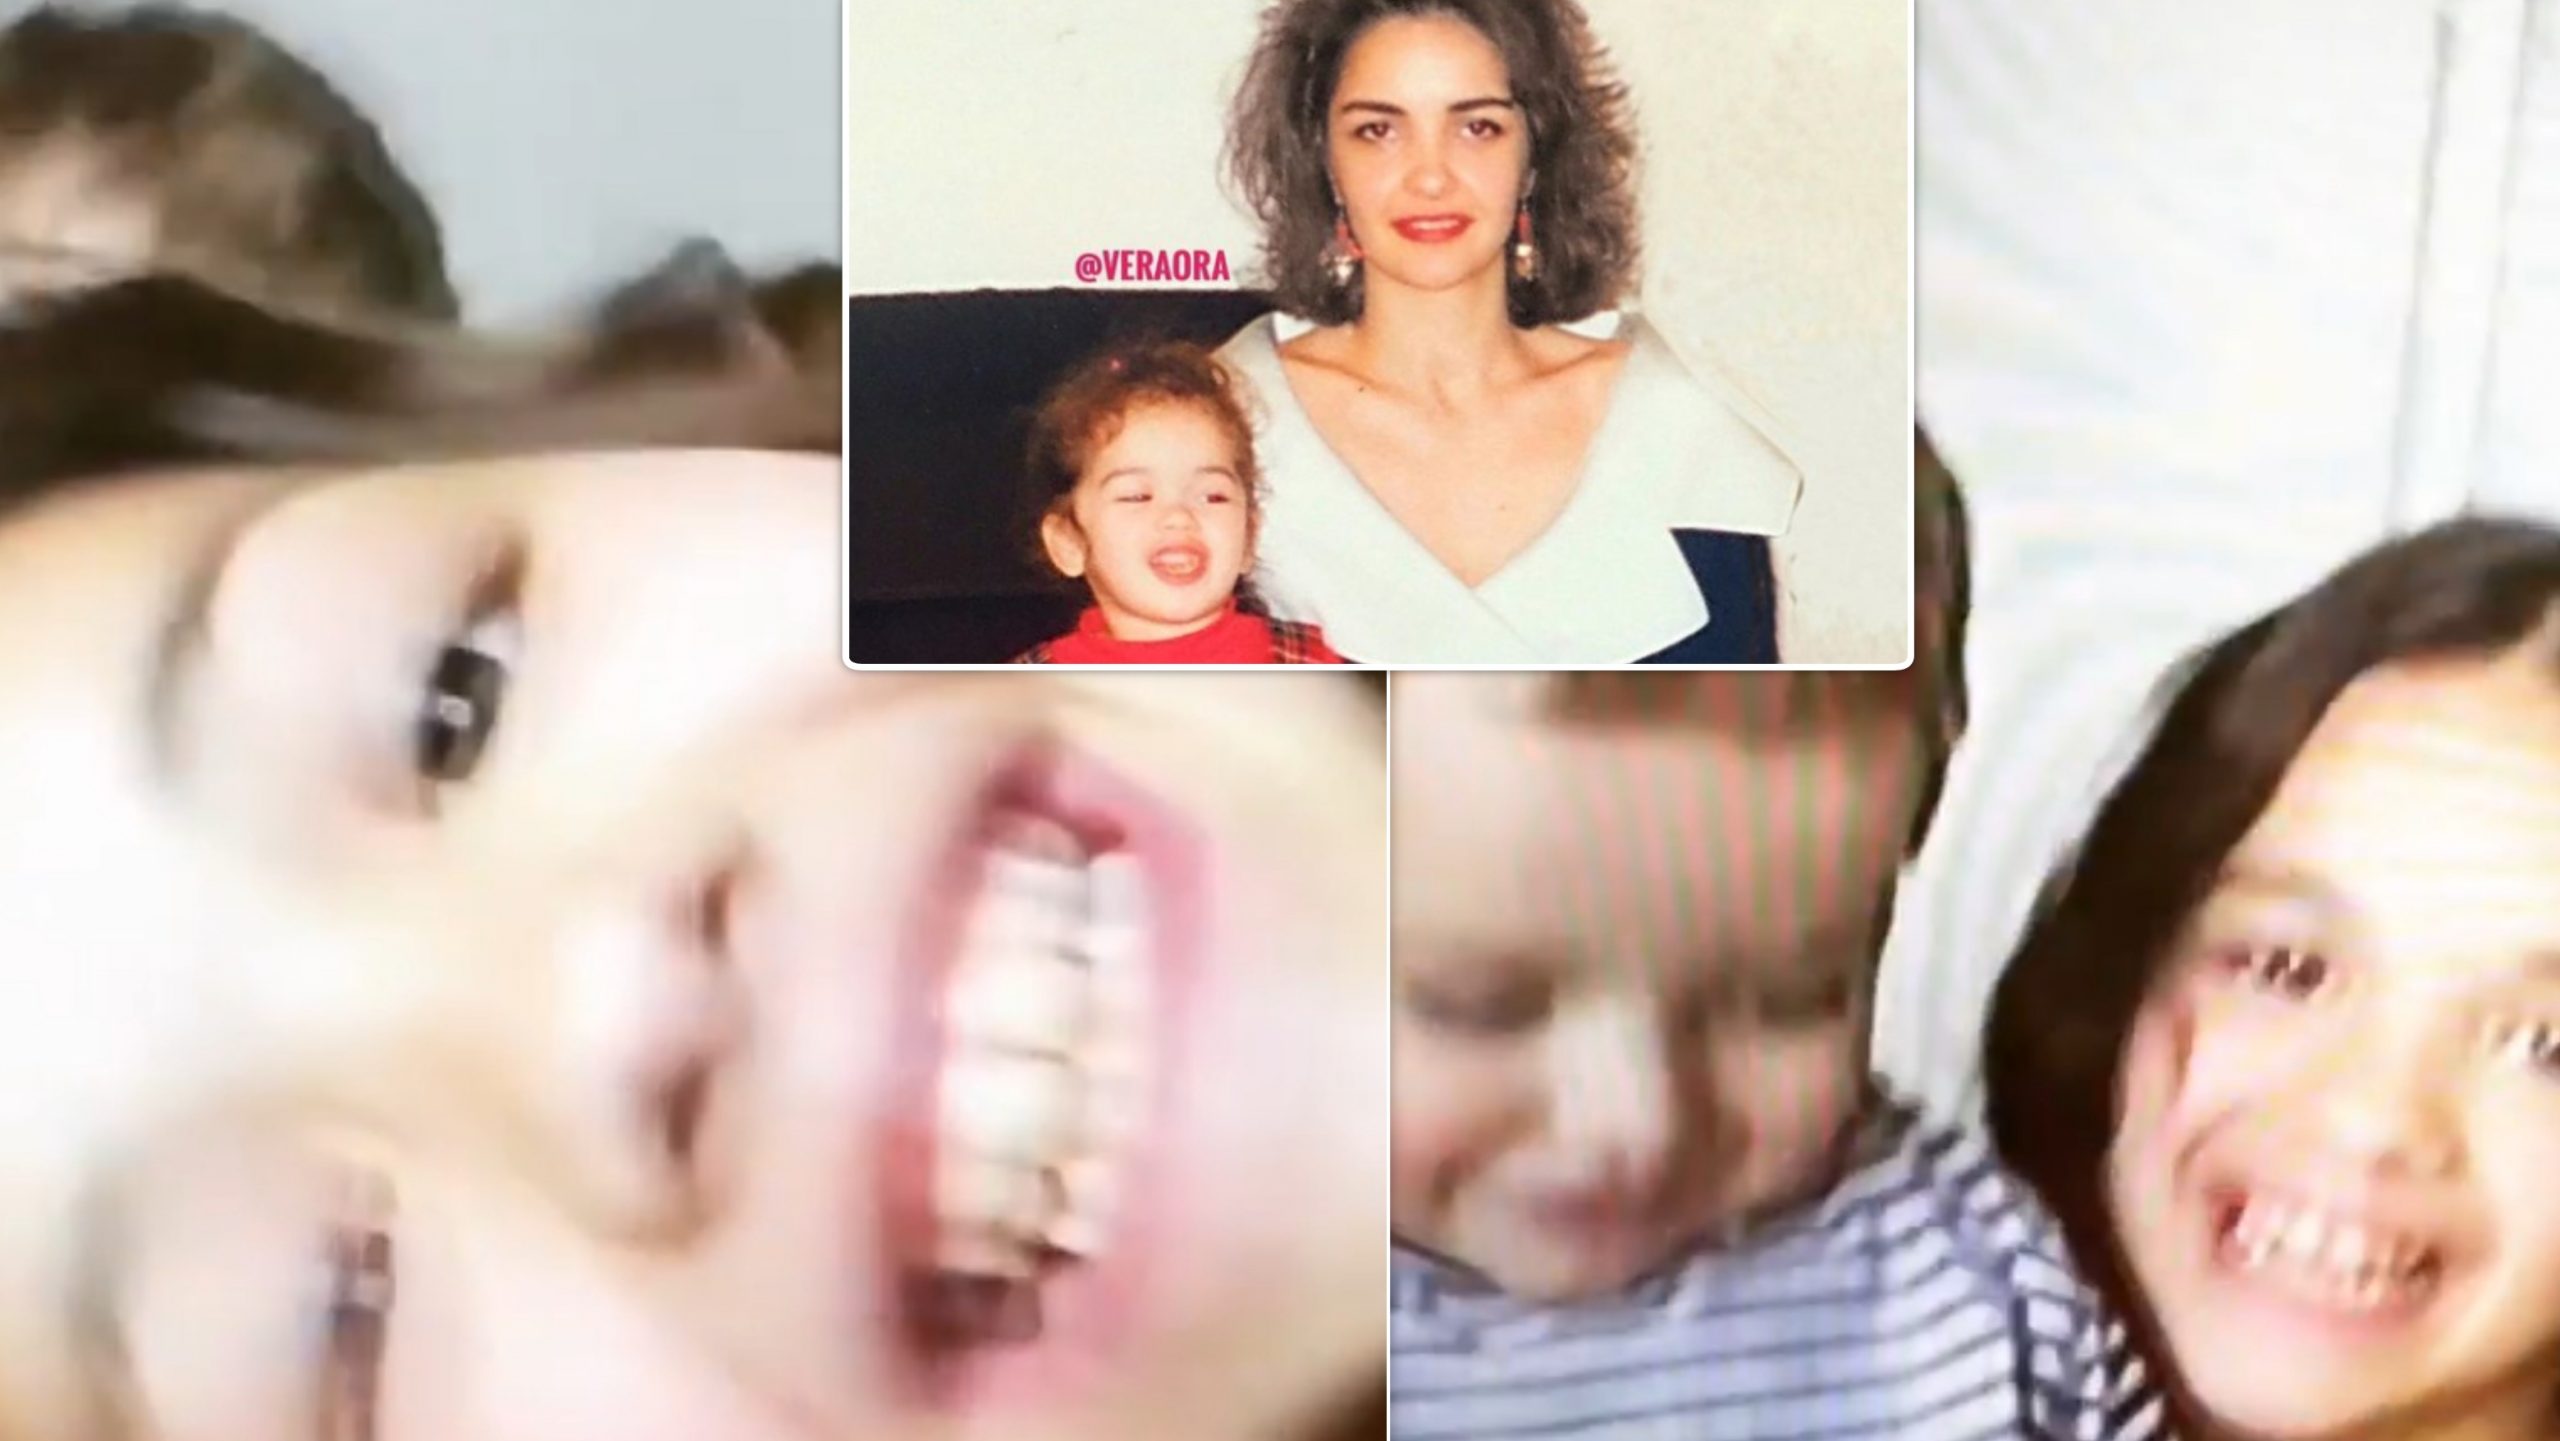 “Momente si këto”, Vera Ora publikon një video të rrallë të Rita Orës kur ishte fëmijë